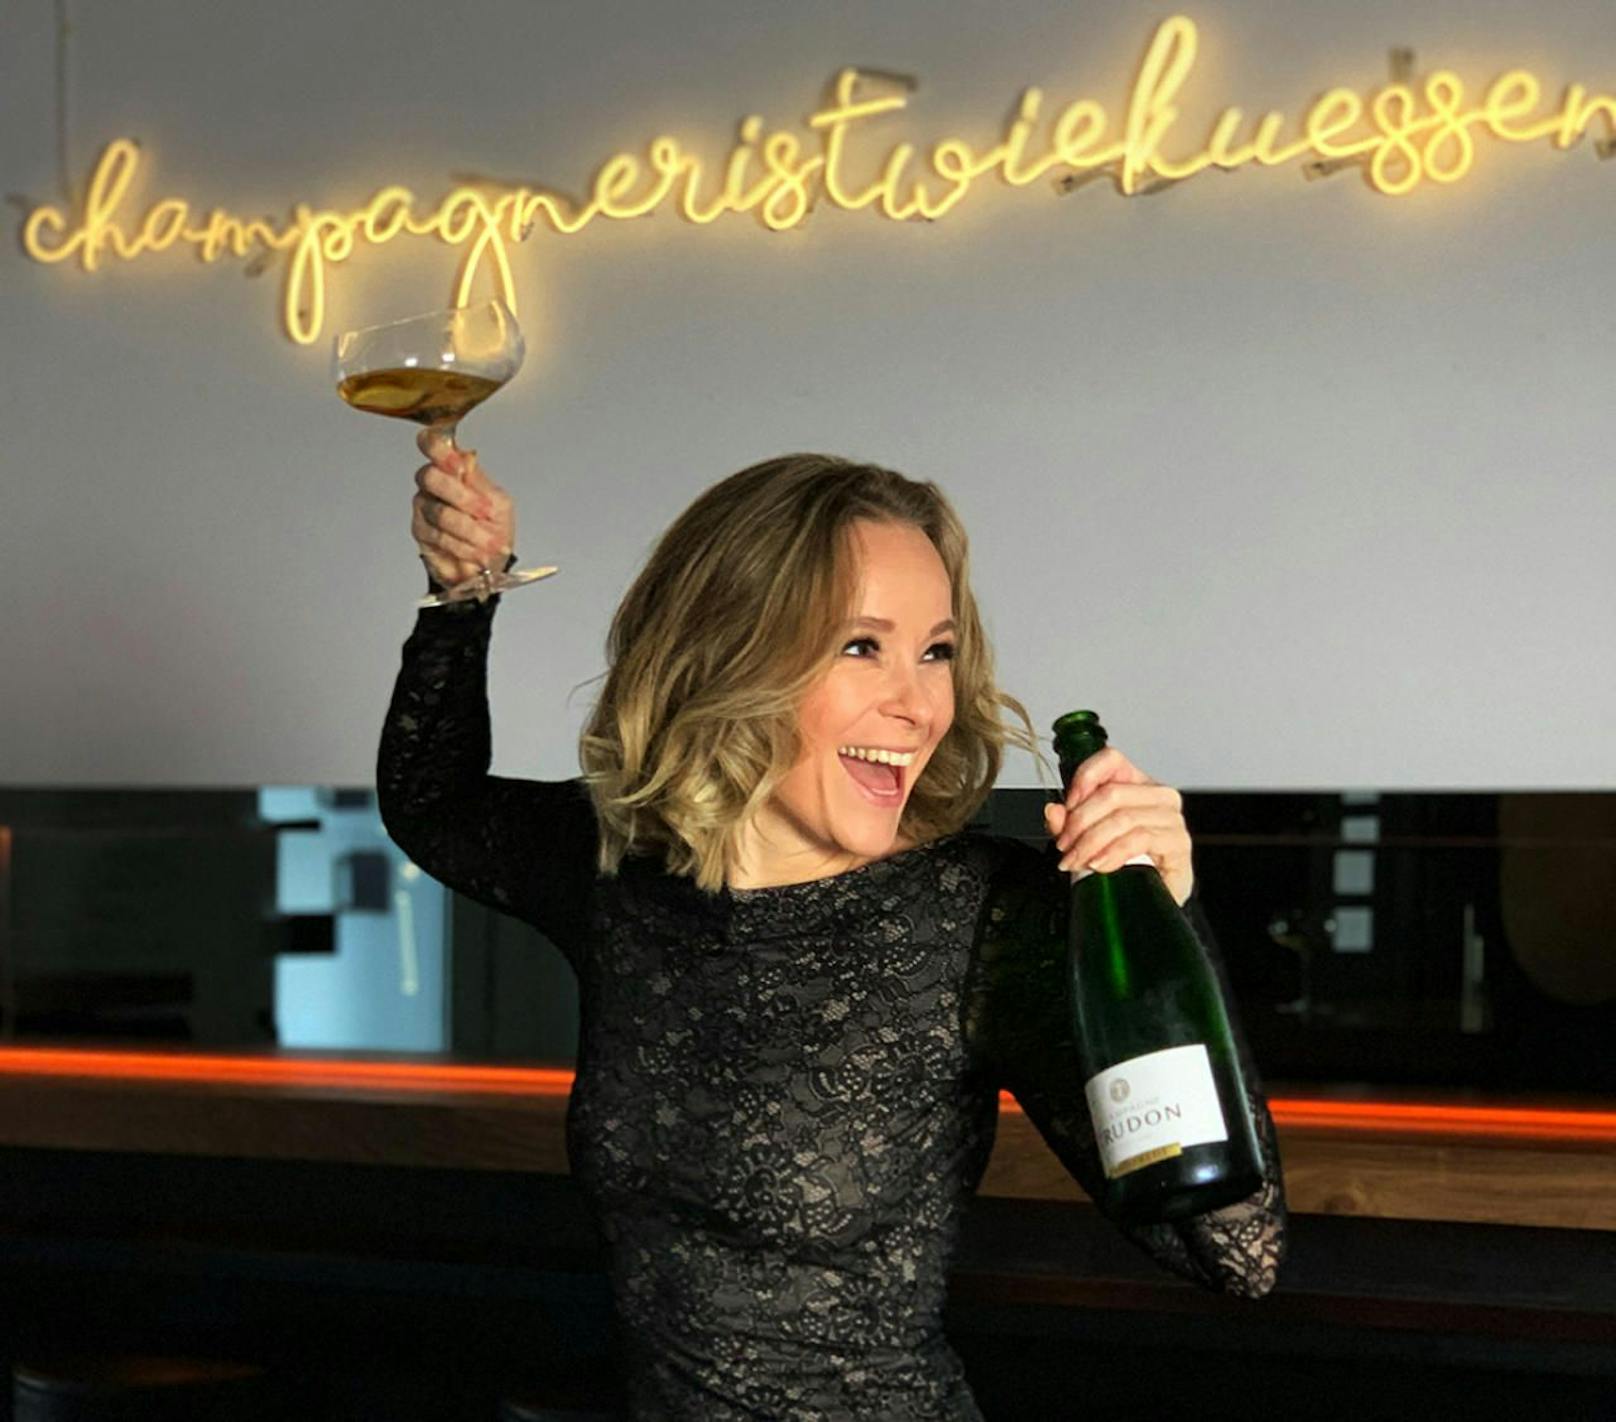 Für Missy May ist Champagner wie Küssen.
